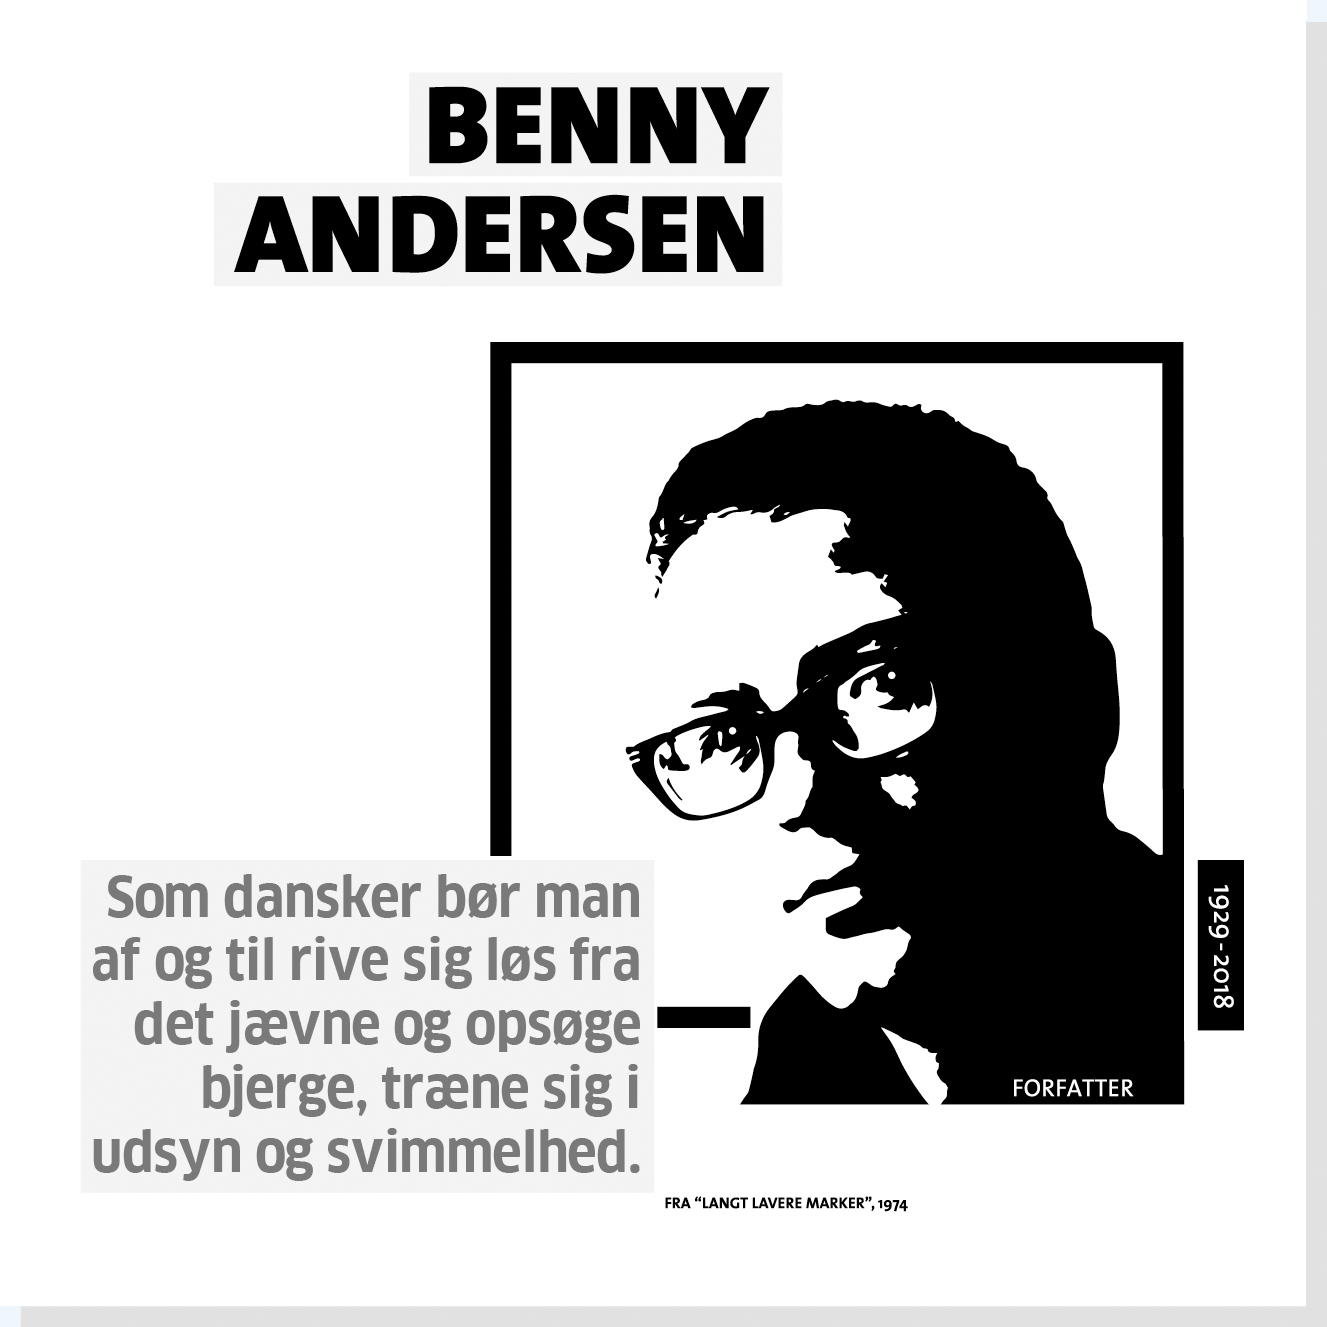 Benny Andersen er en af Rysensteen 22 udvalgte danske dannelsespersoner